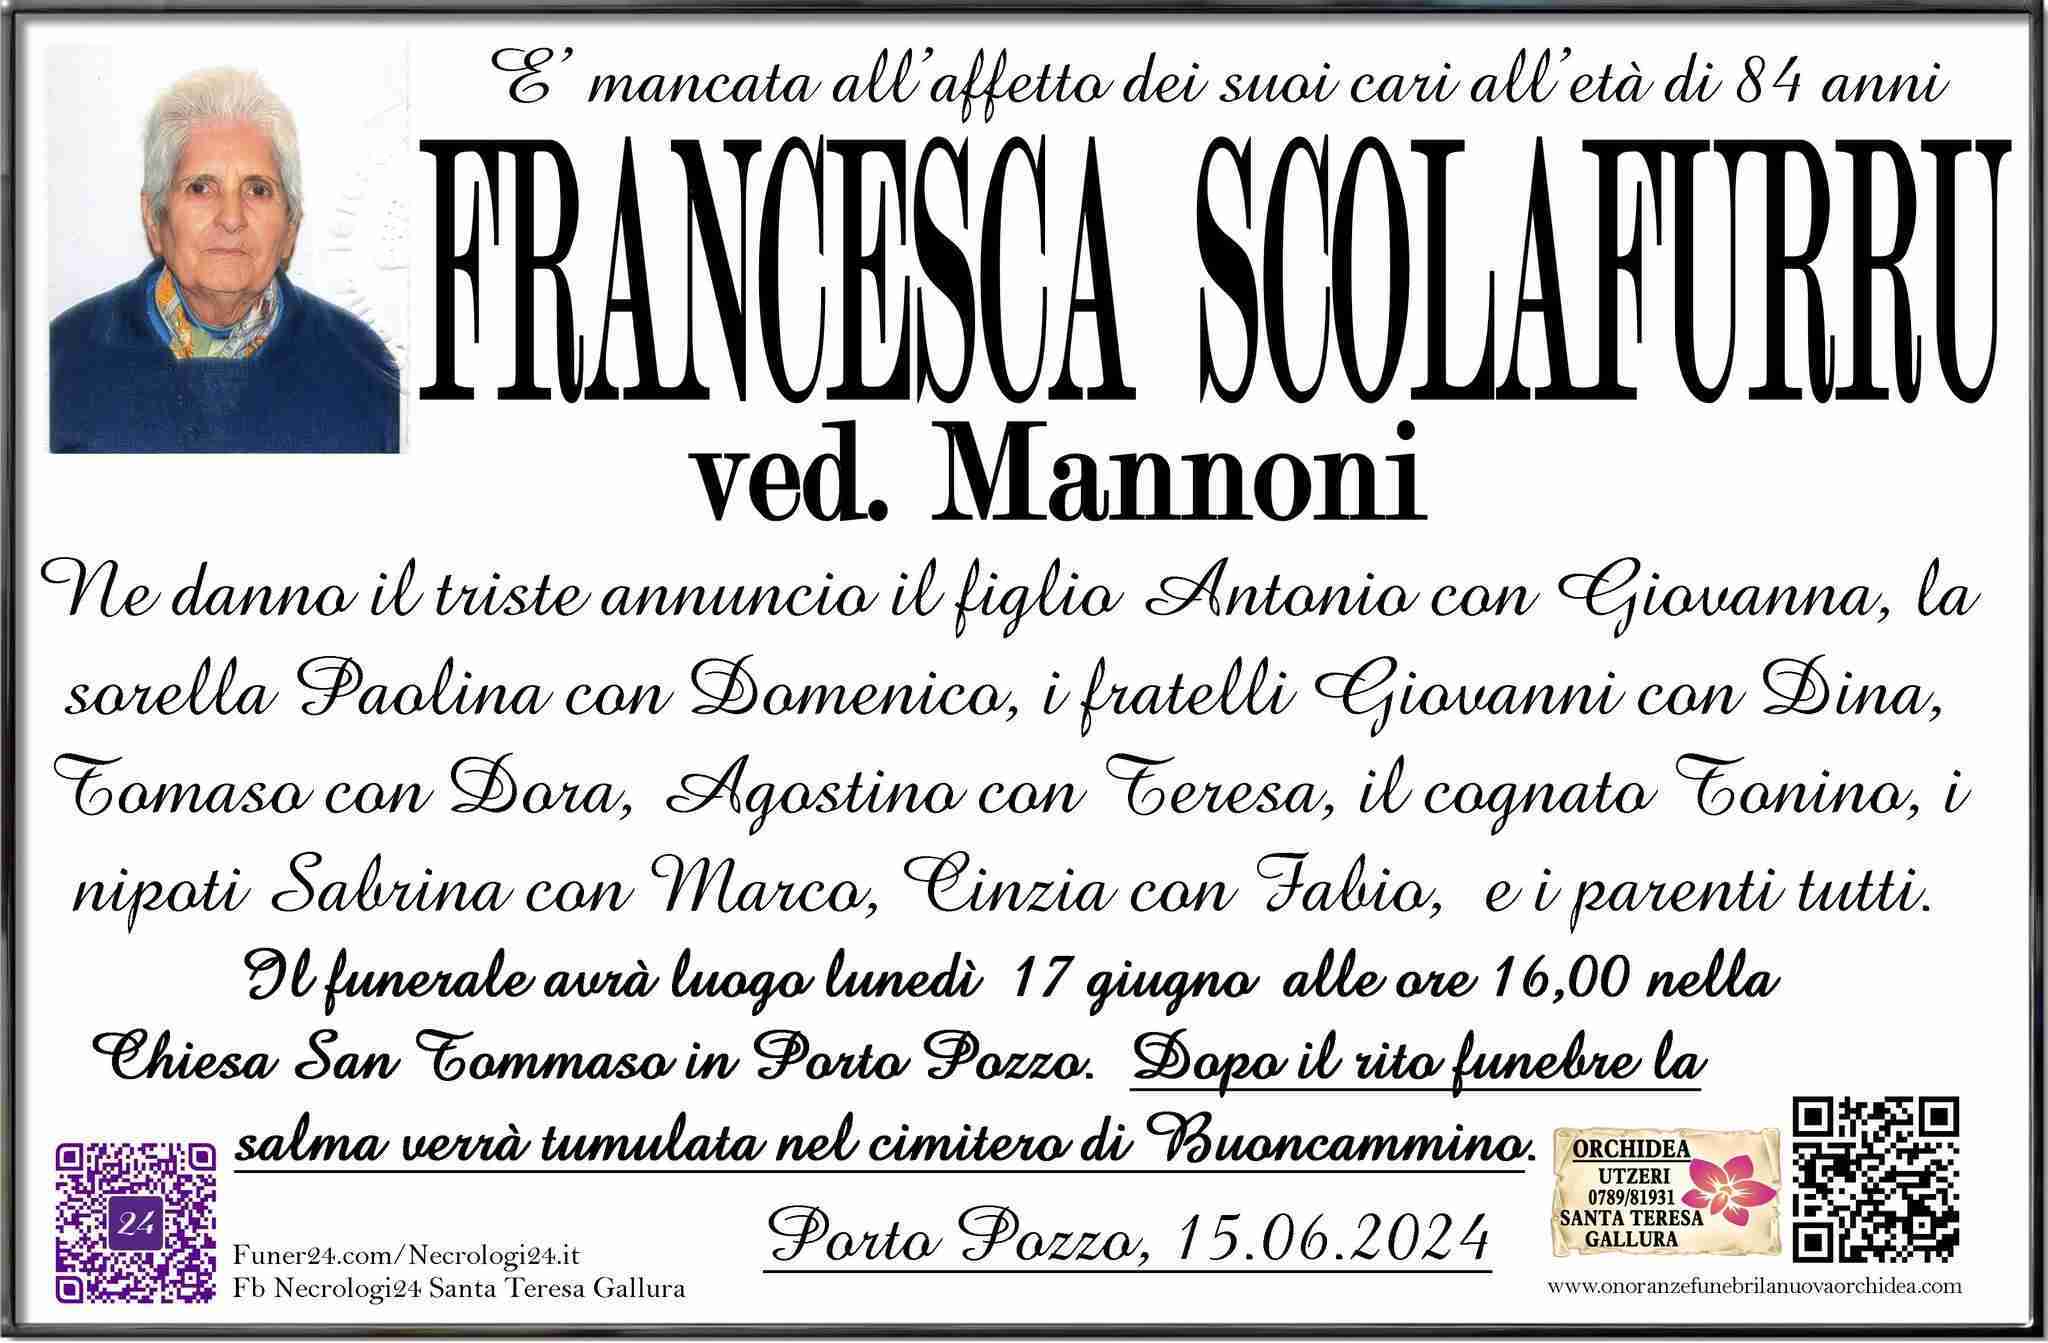 Francesca Scolafurru